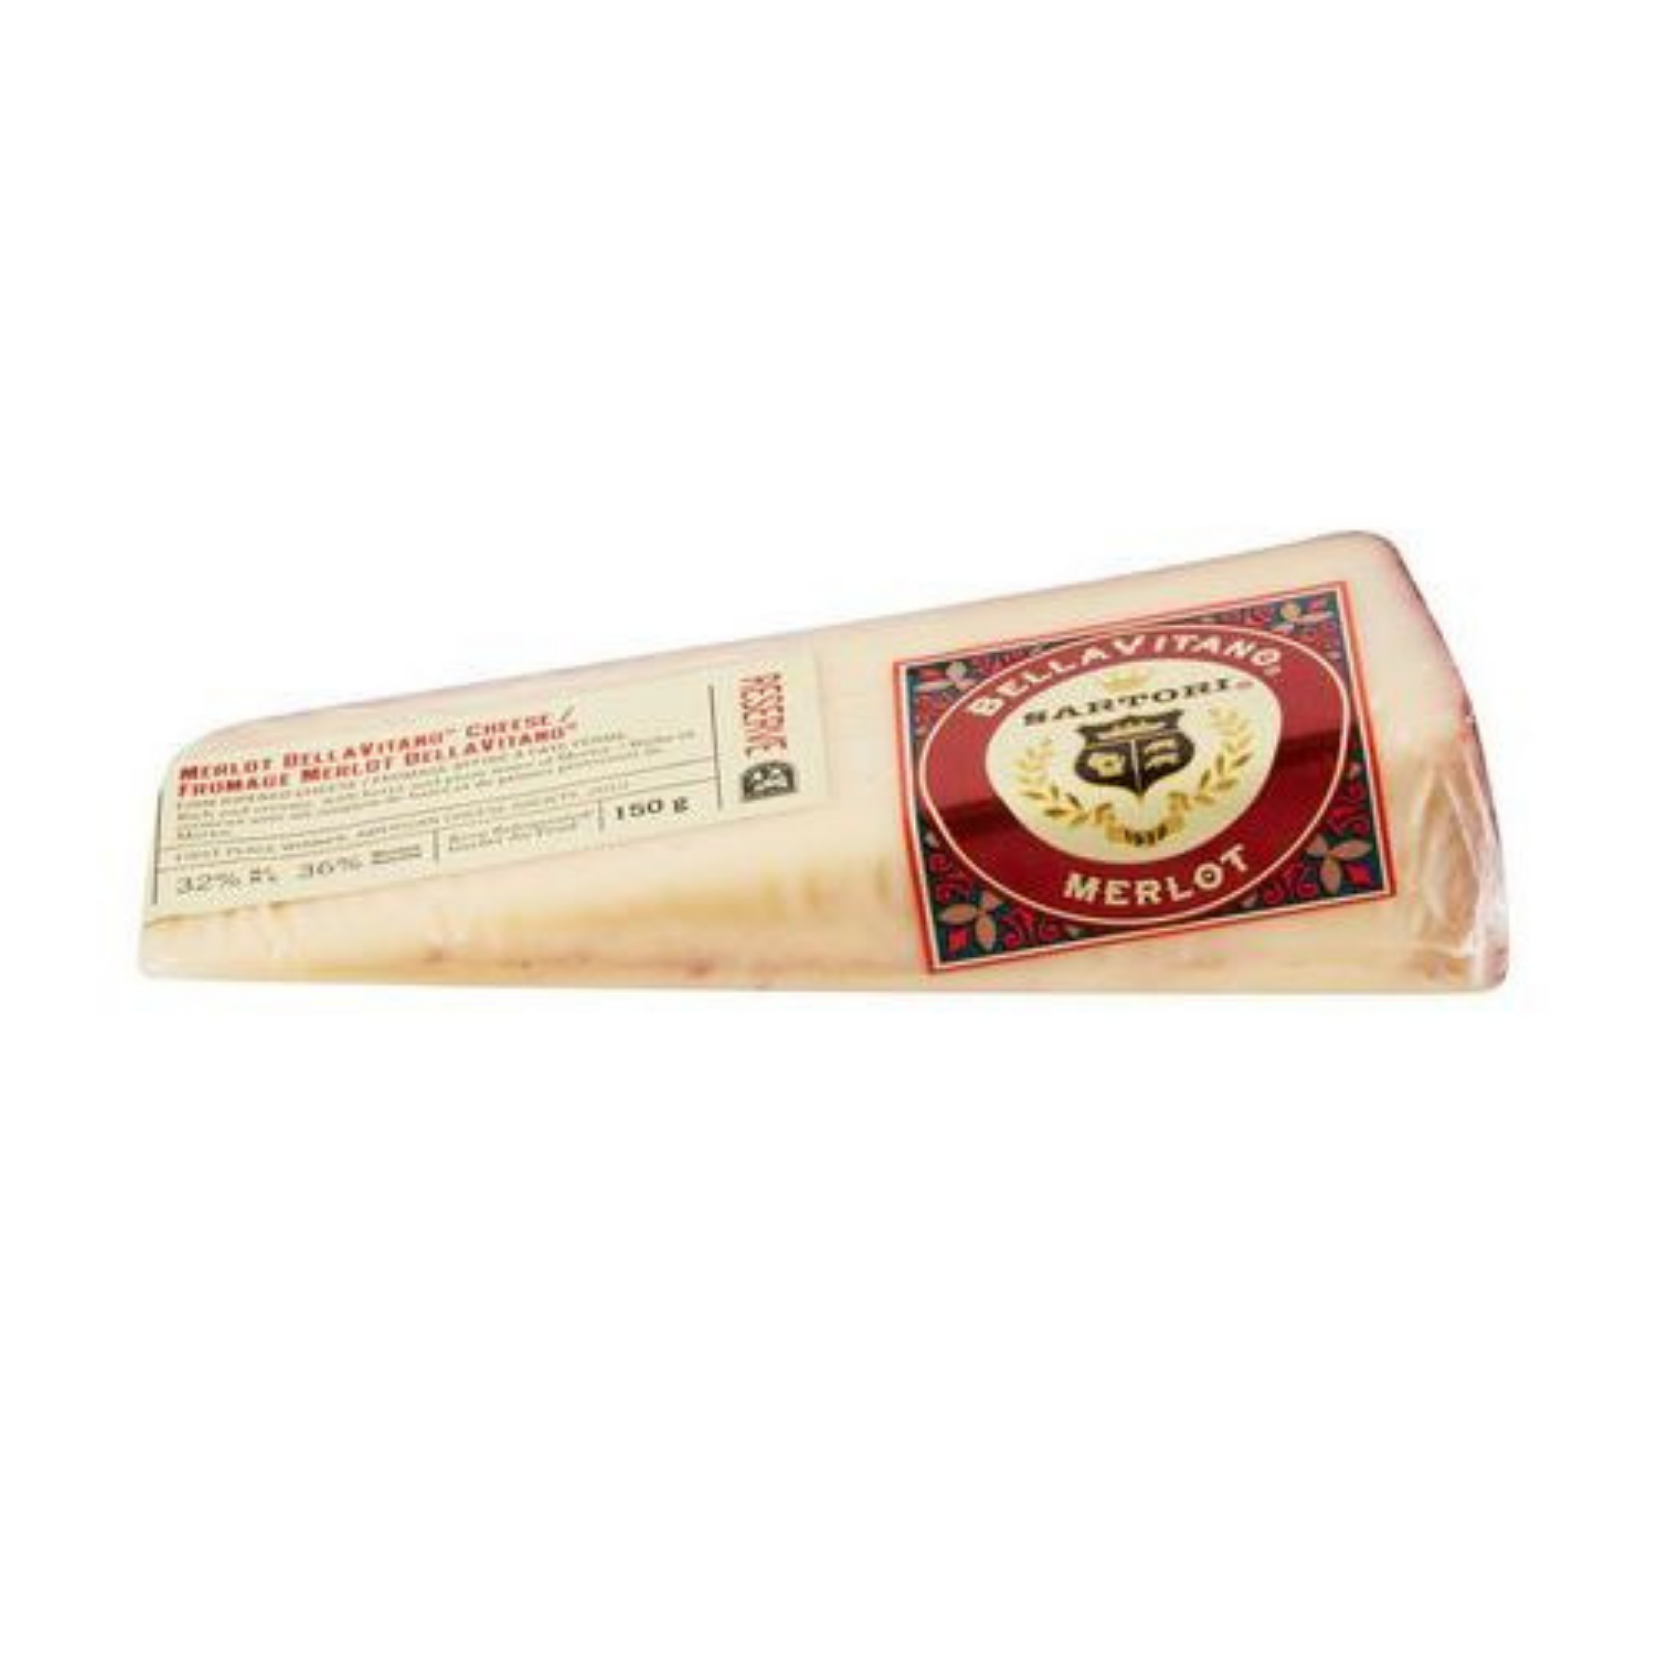 Bellavitano Merlot  Cheese 150g